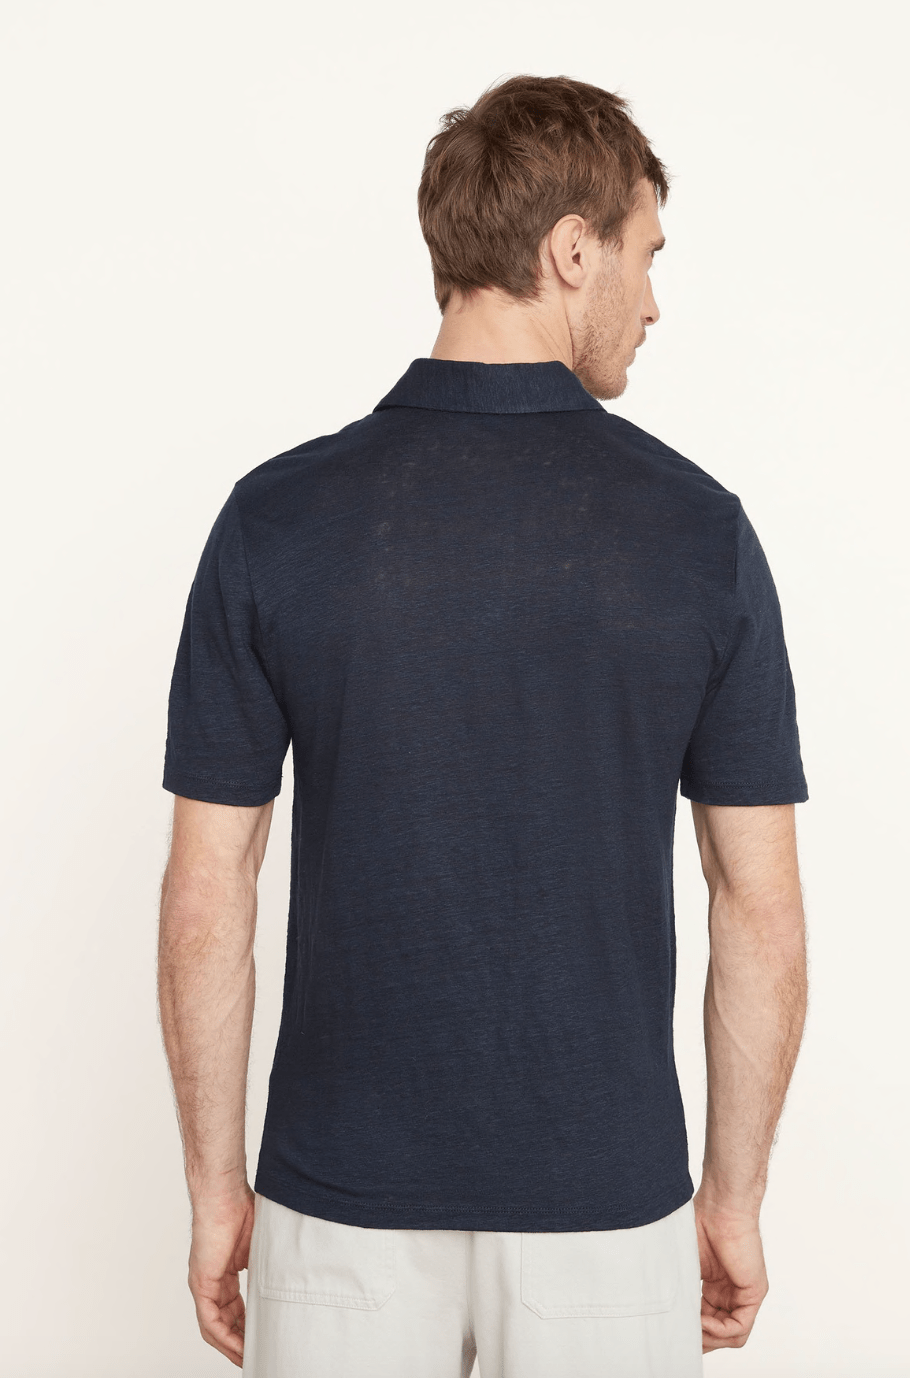 Vince Linen Polo Shirt in Coastal Blue - Estilo Boutique